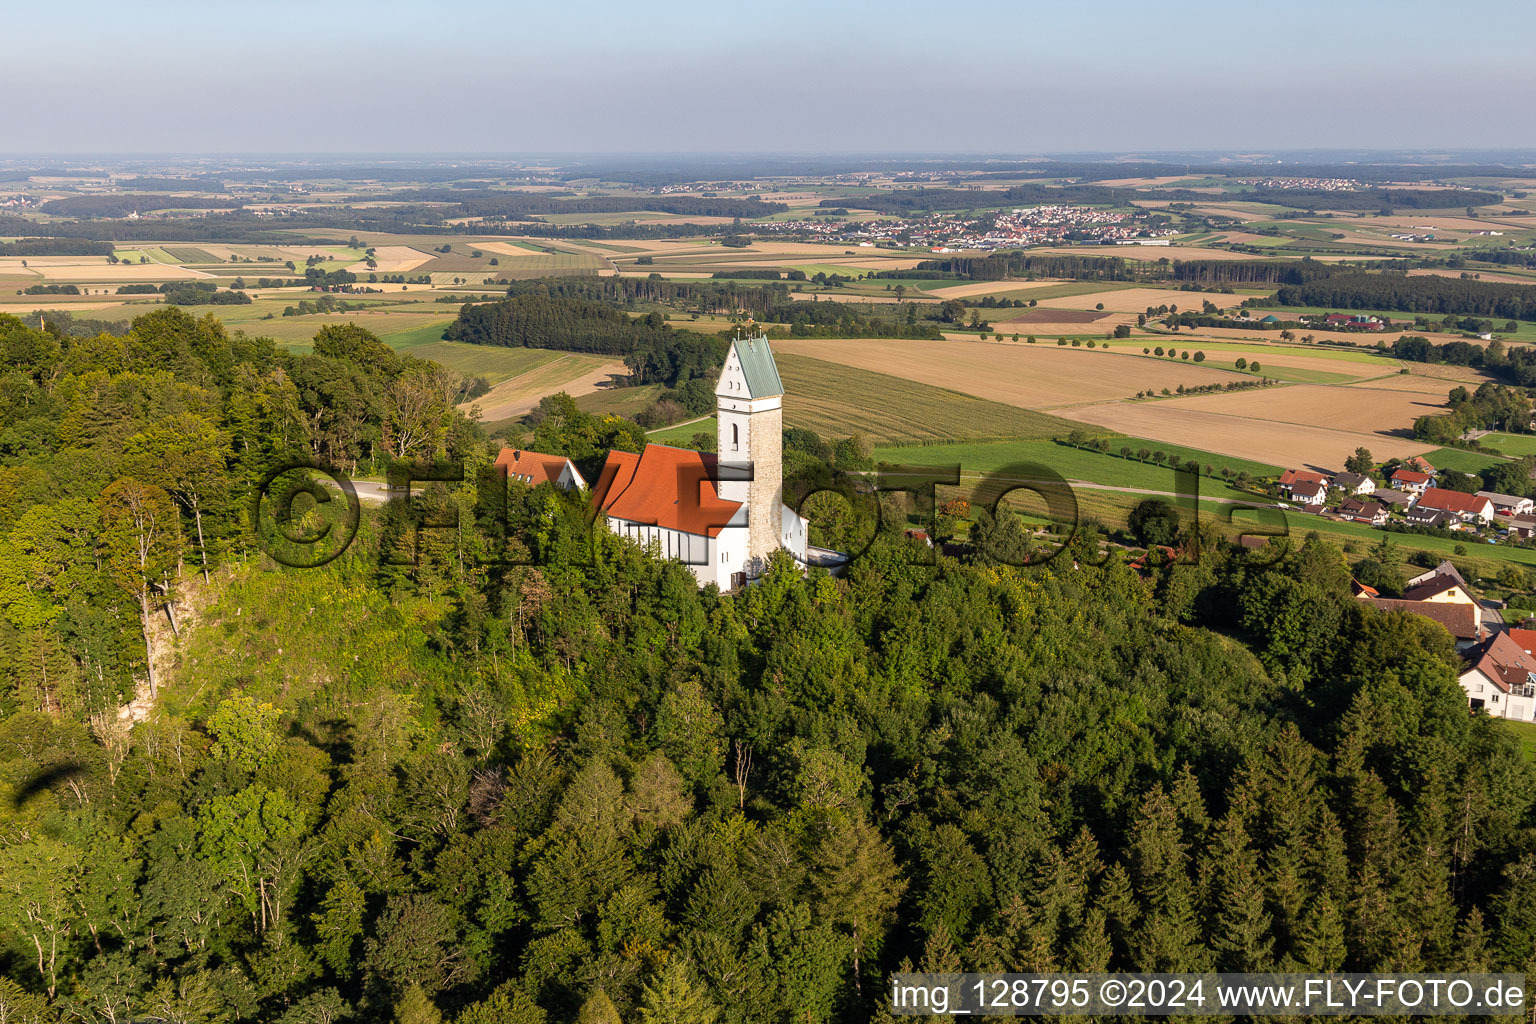 Vue aérienne de Sommet de Bussen avec église de pèlerinage dans le quartier d'Offingen à Uttenweiler dans le département Bade-Wurtemberg, Allemagne